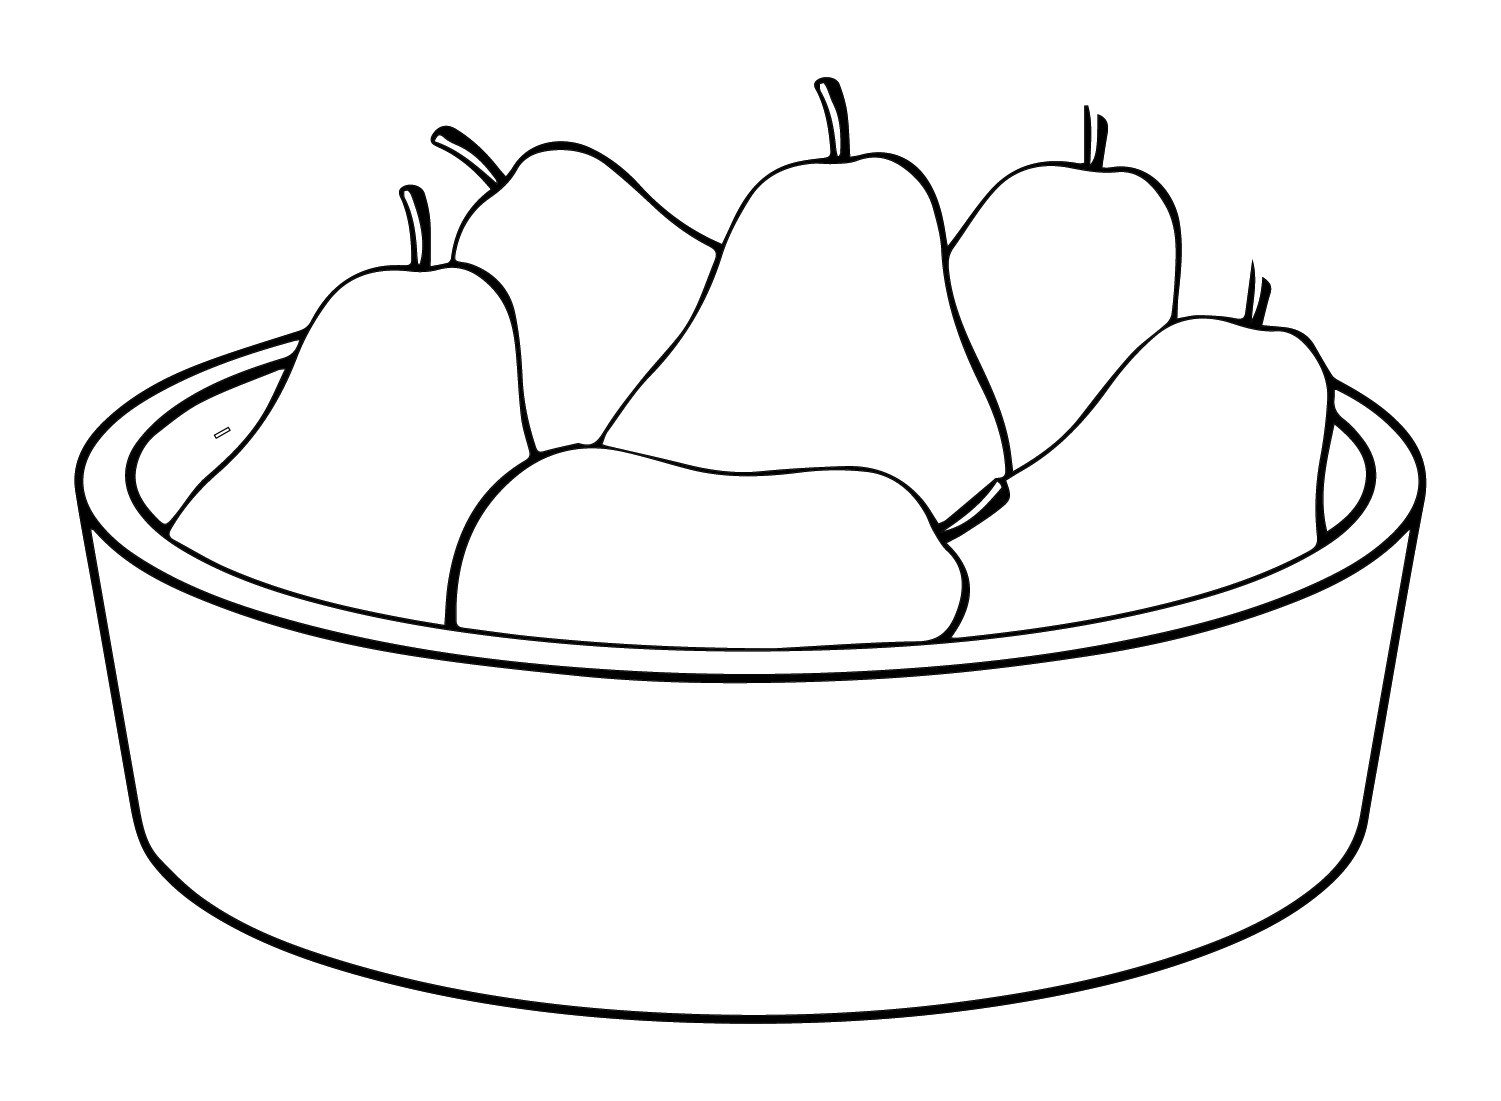 Peras de canasta de peras